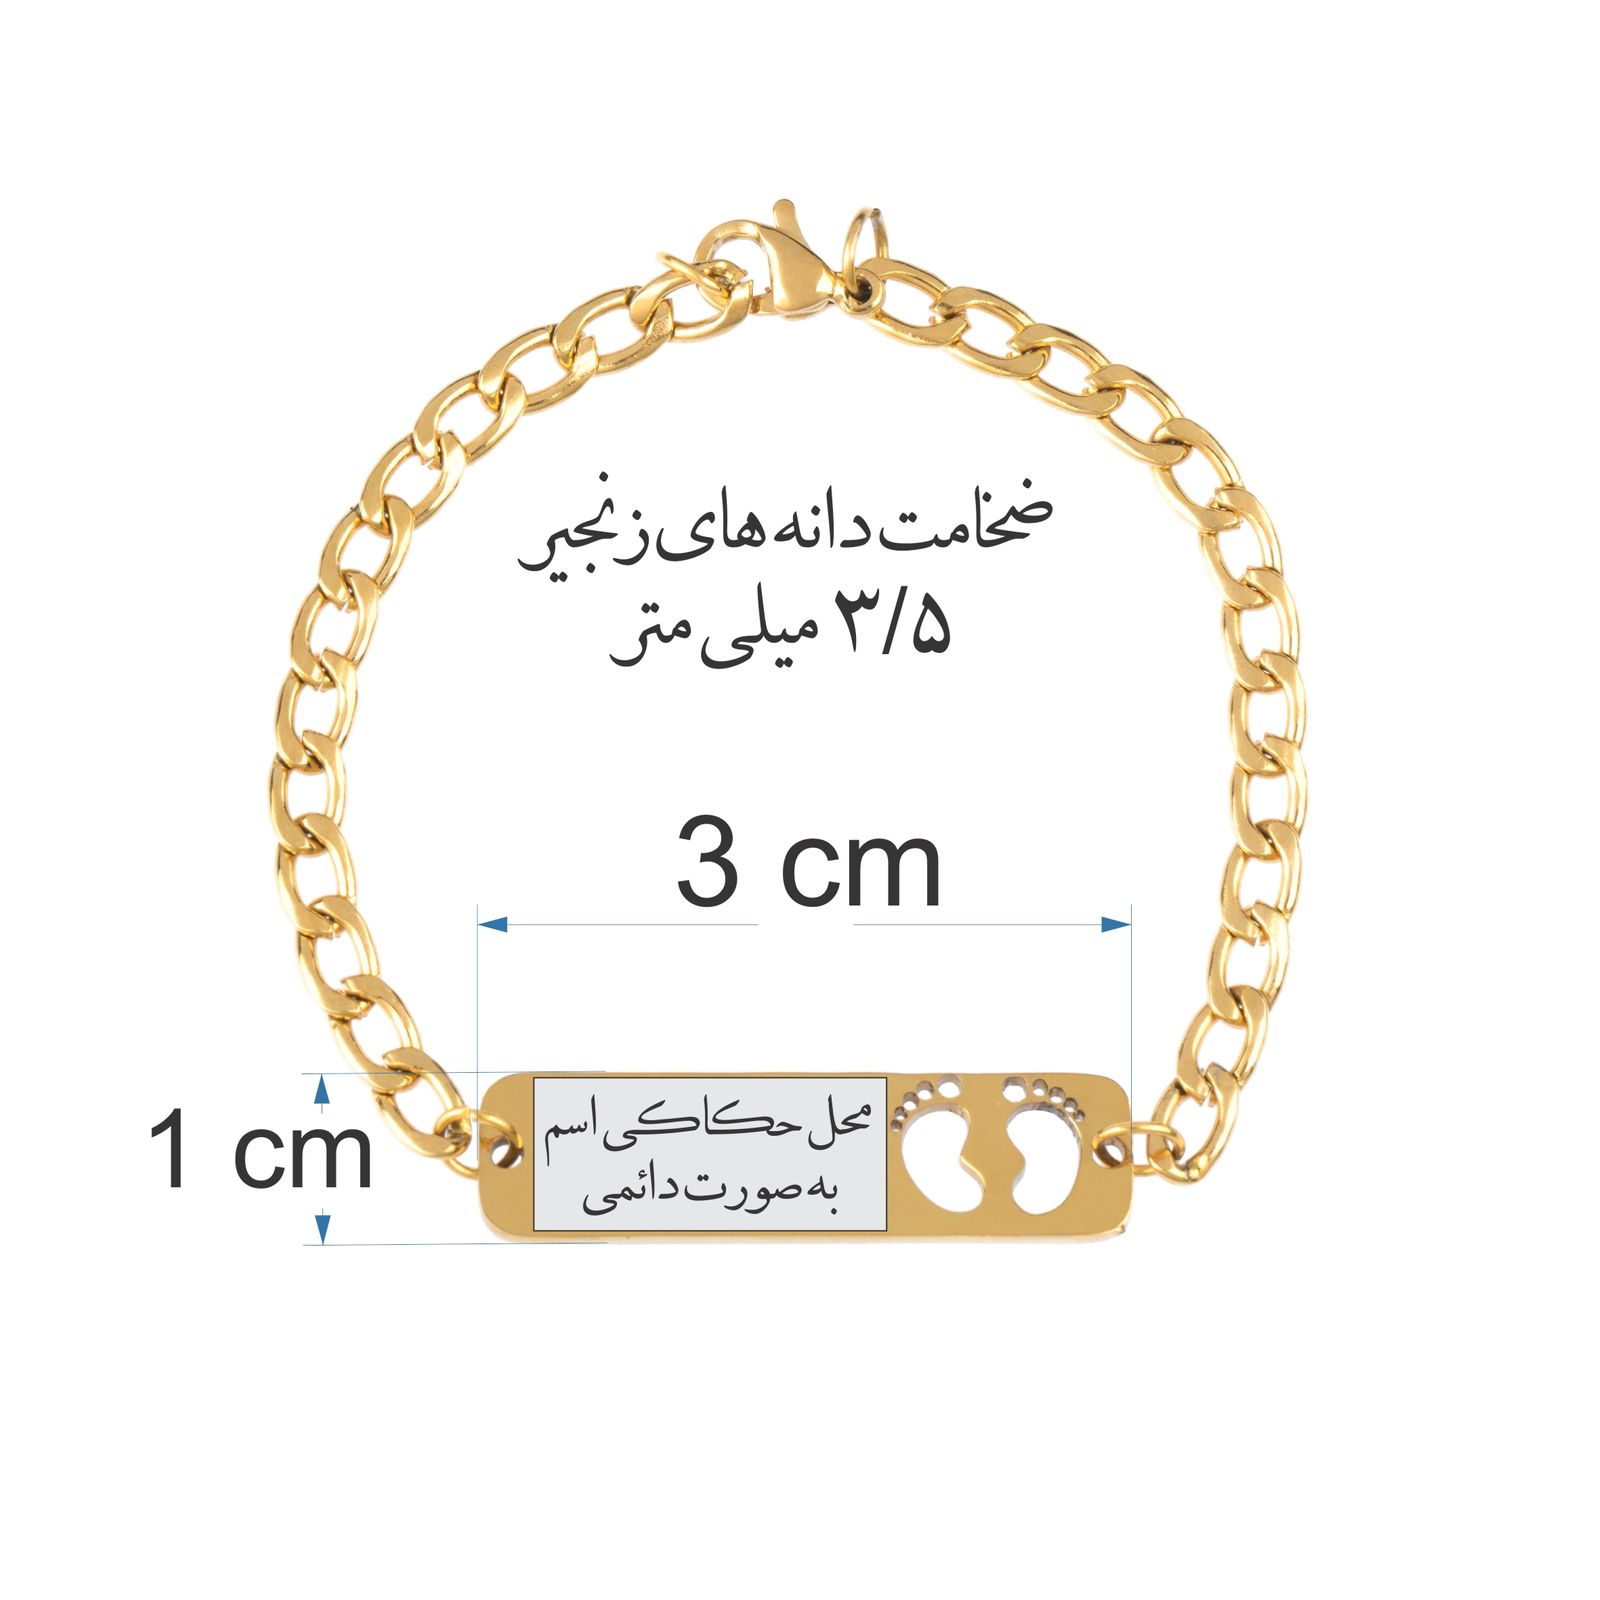 دستبند دخترانه گيلواره زراوشان مدل اسم محیا کد B21 -  - 2